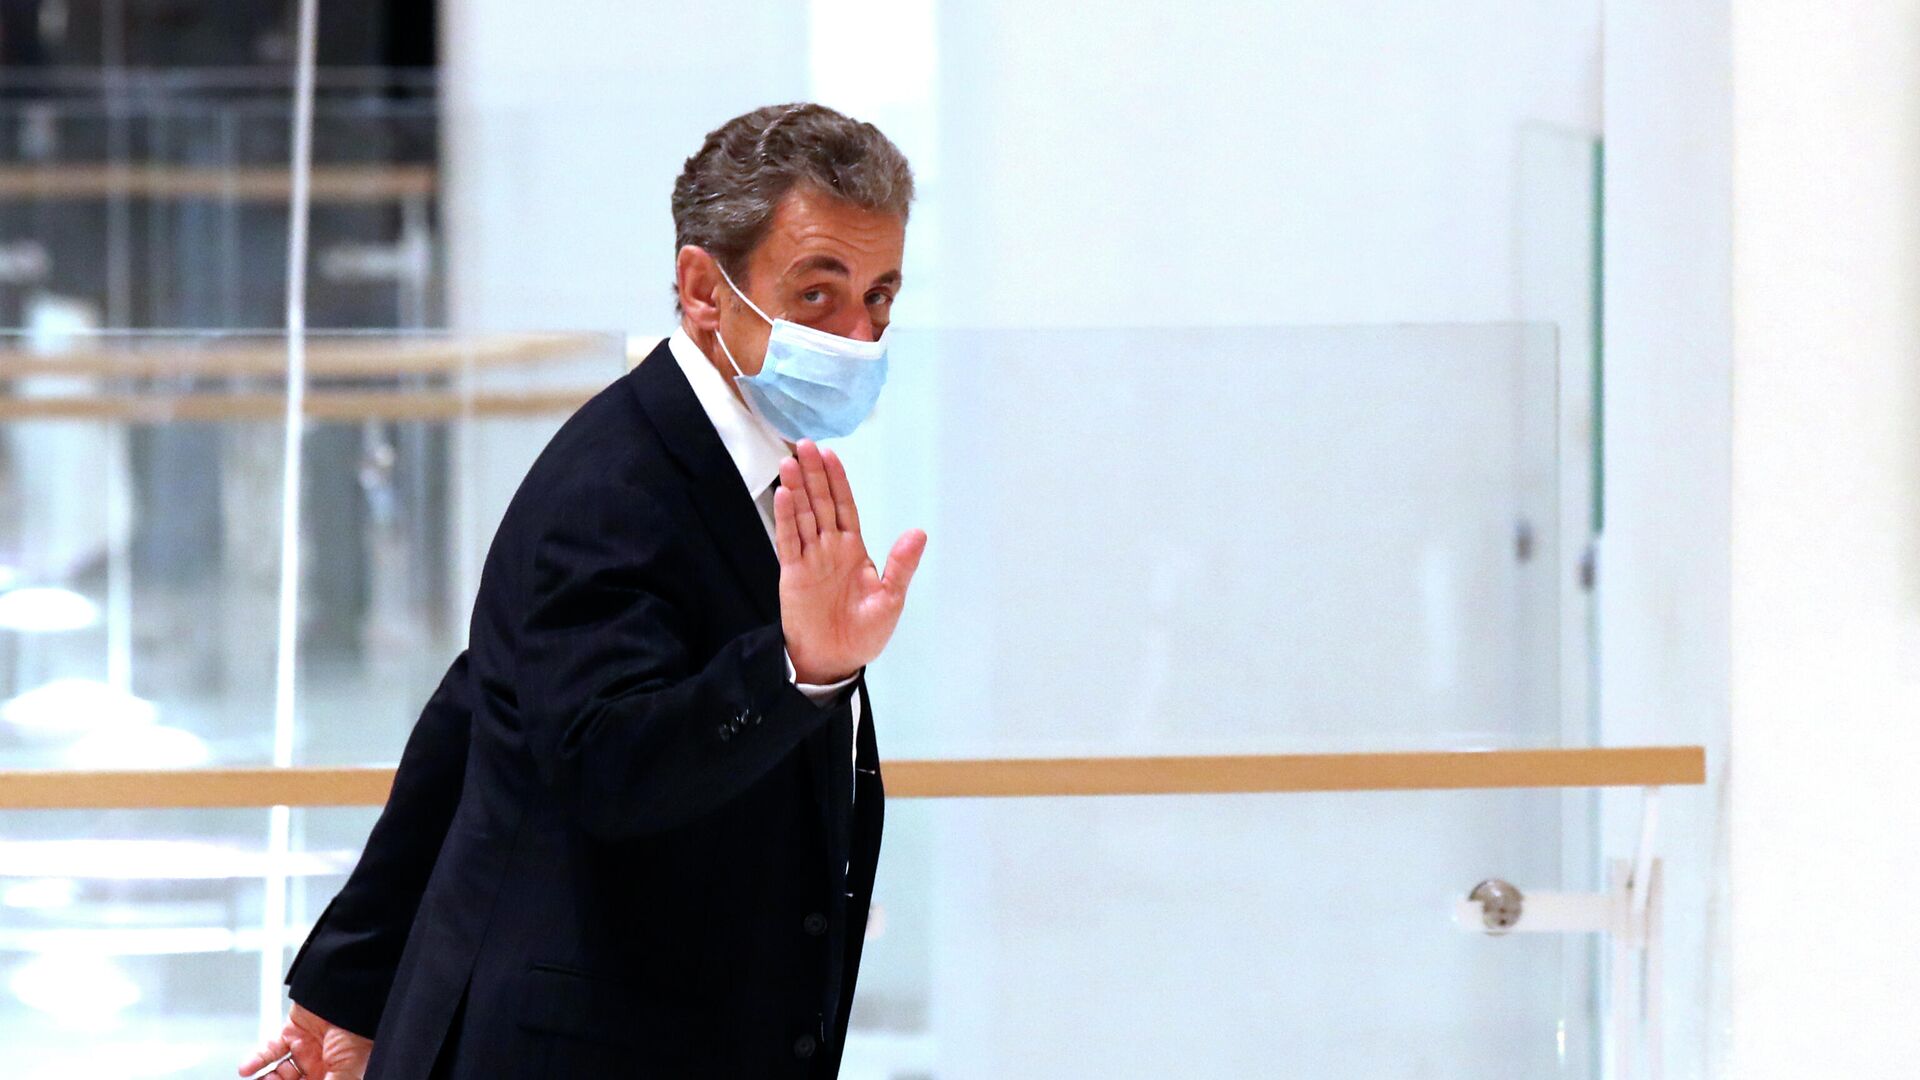 Бывший президент Франции Николя Саркози в здании суда - РИА Новости, 1920, 08.12.2020